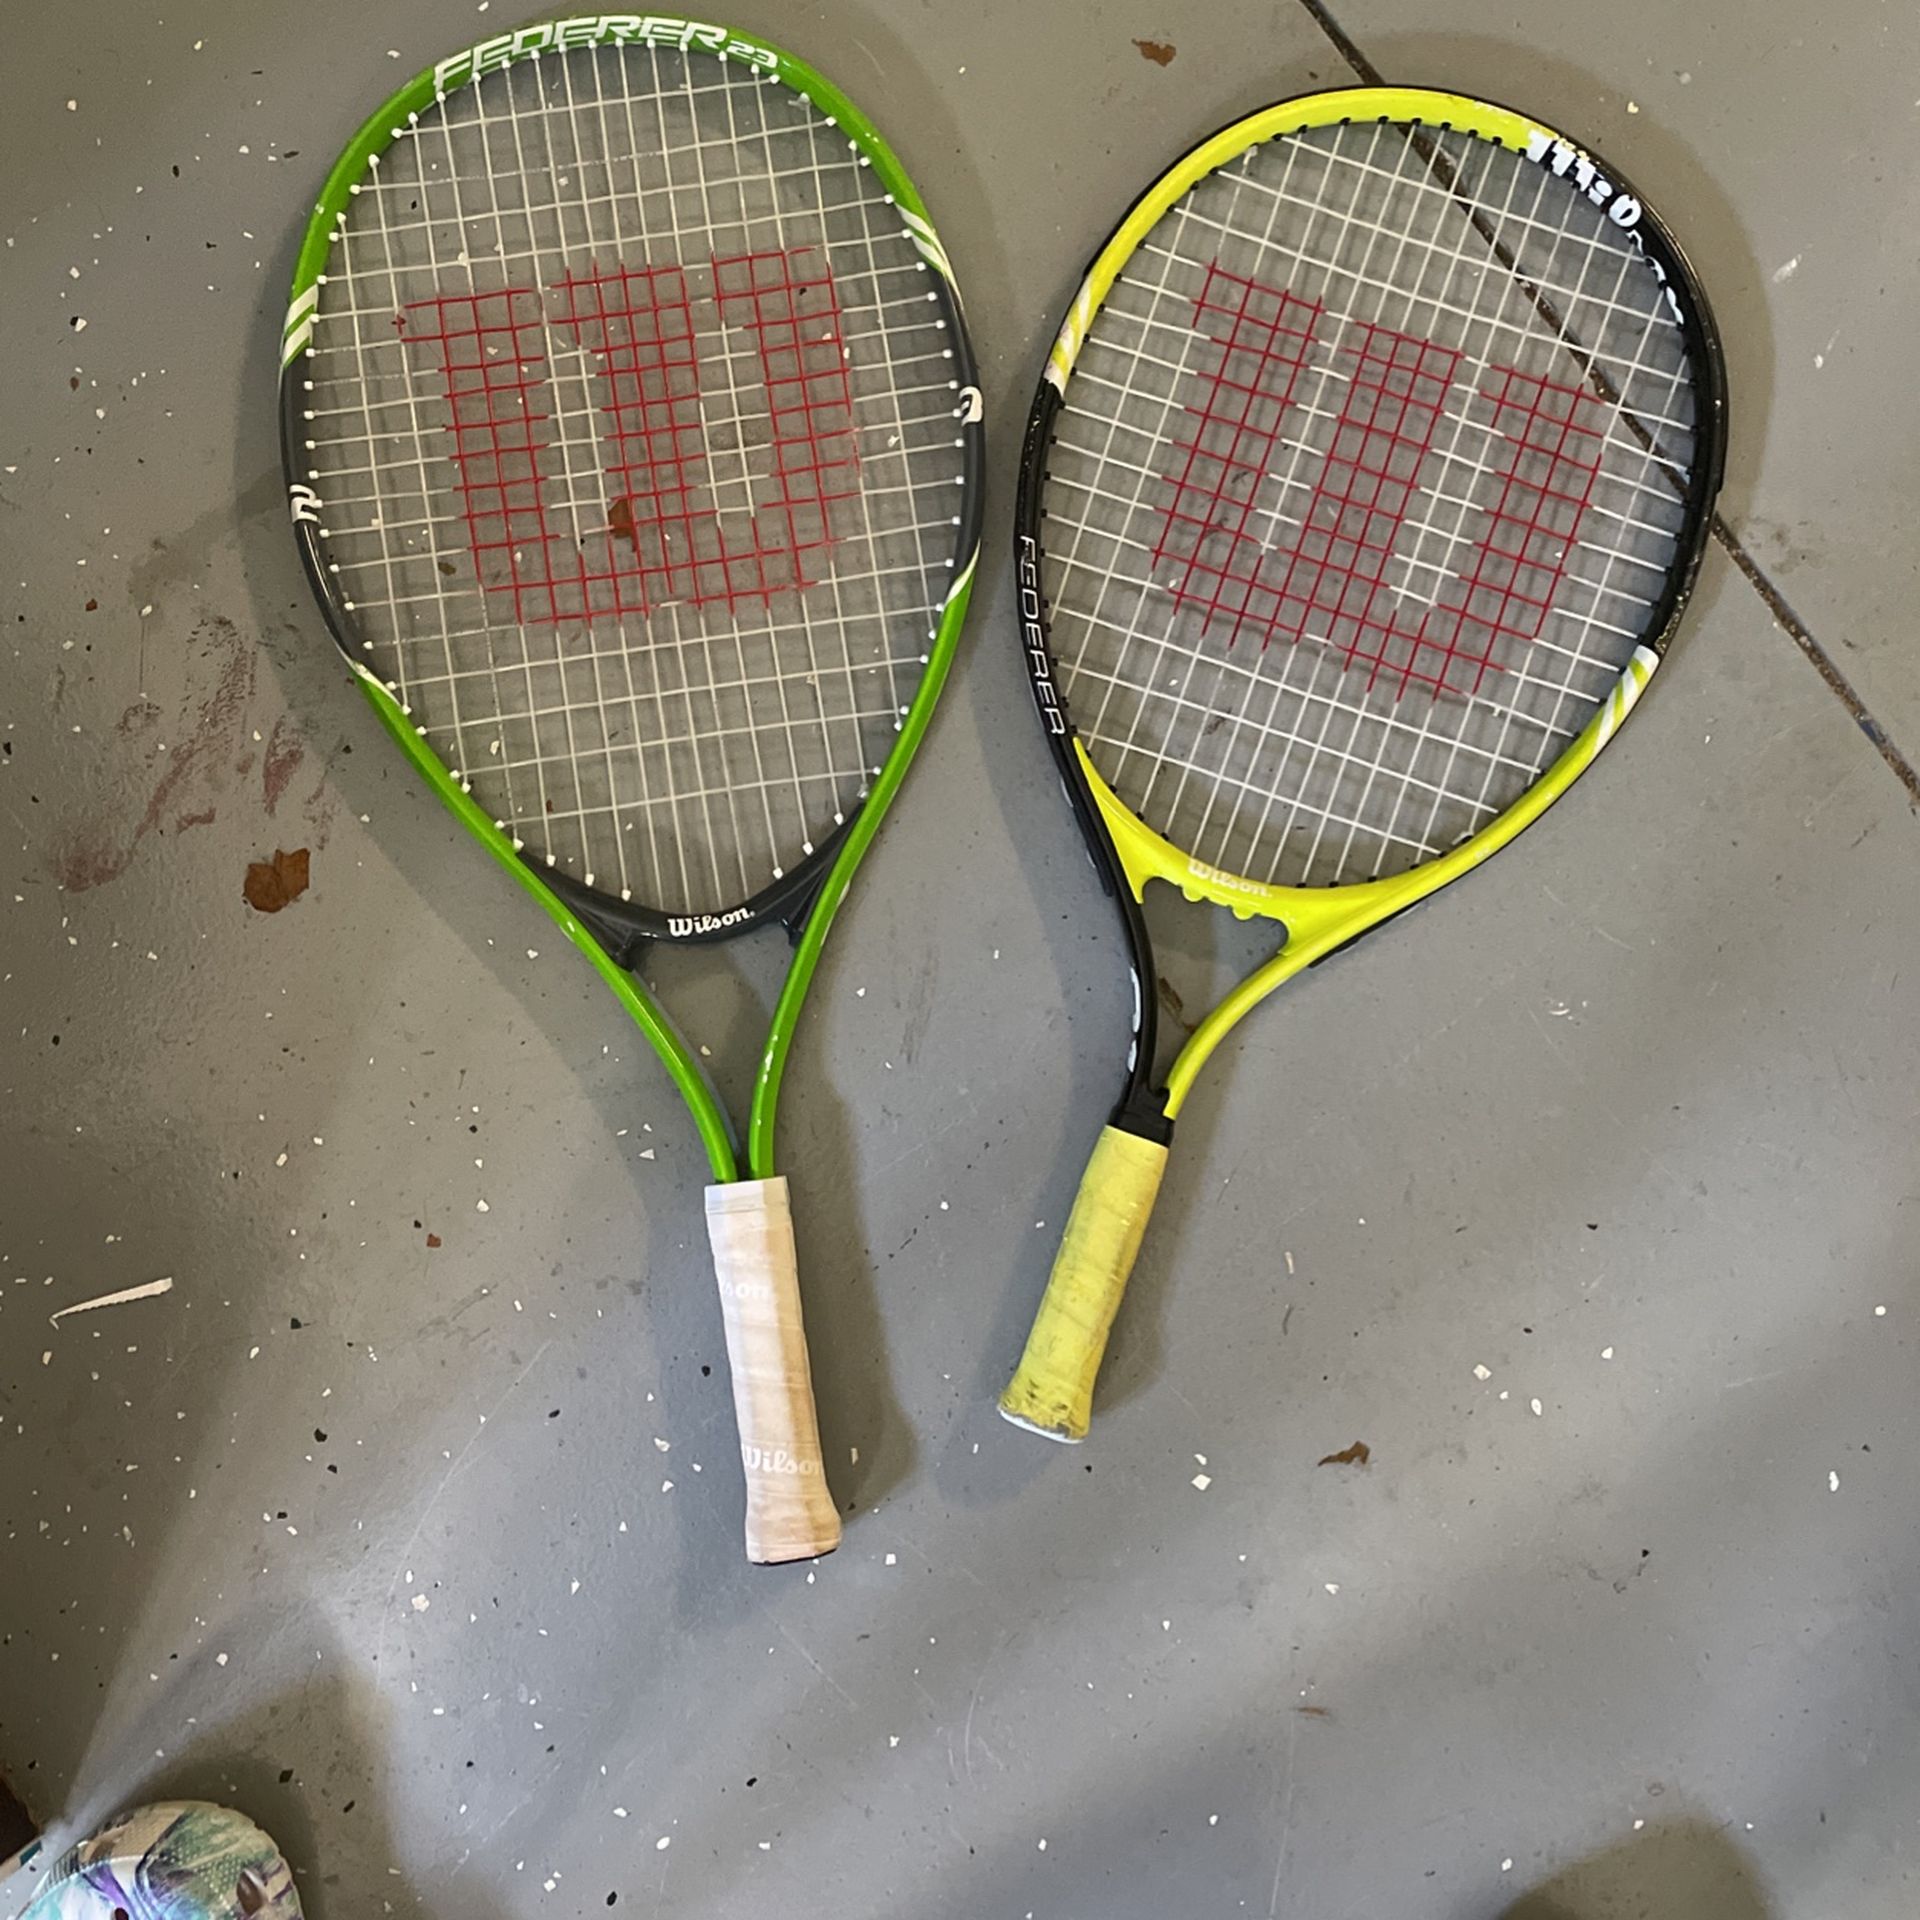 Wilson tennis rackets, tennis, sports equipment